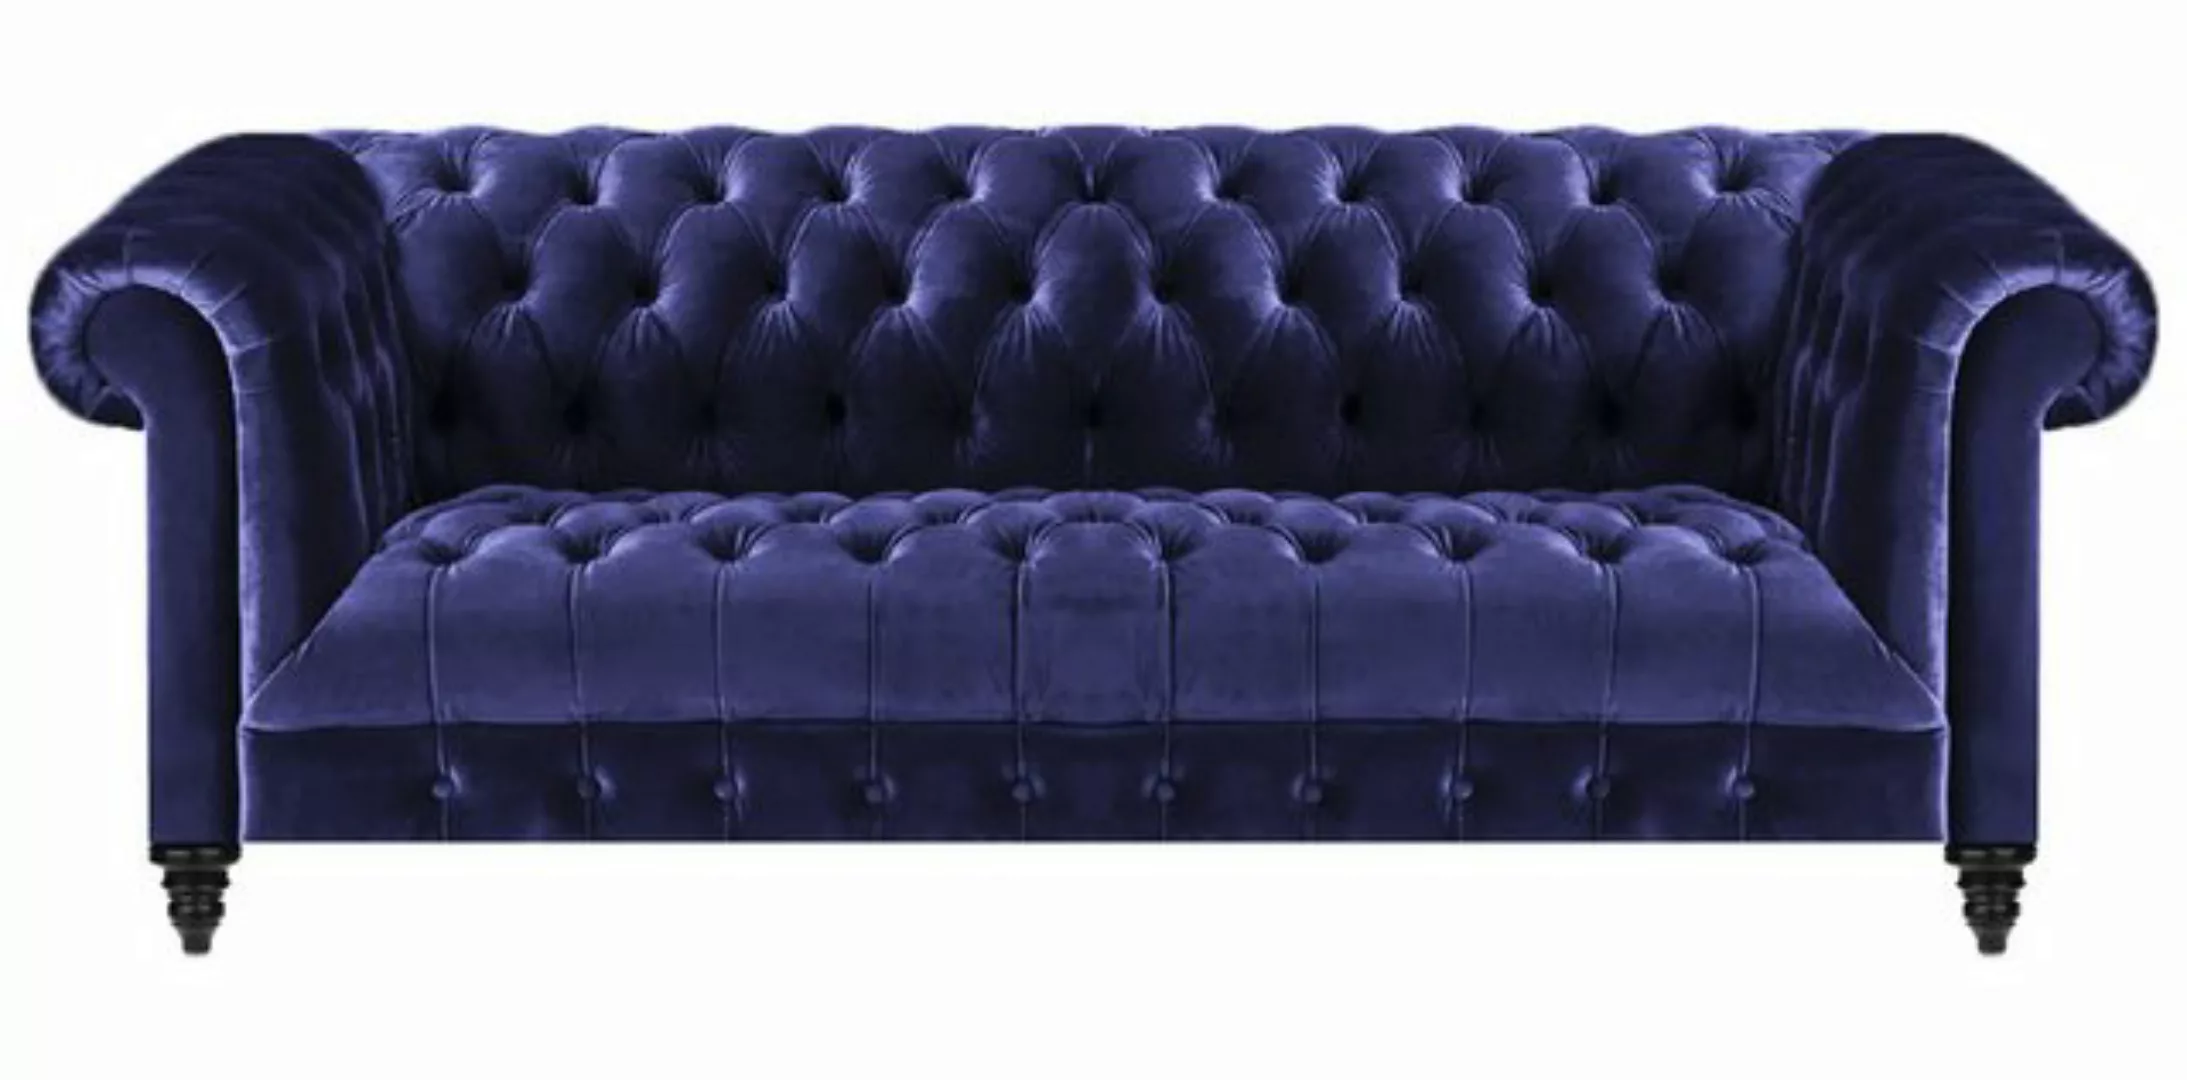 JVmoebel 3-Sitzer Chesterfield Sofa Dreisitze Neu Couch Einrichtung Wohnzim günstig online kaufen